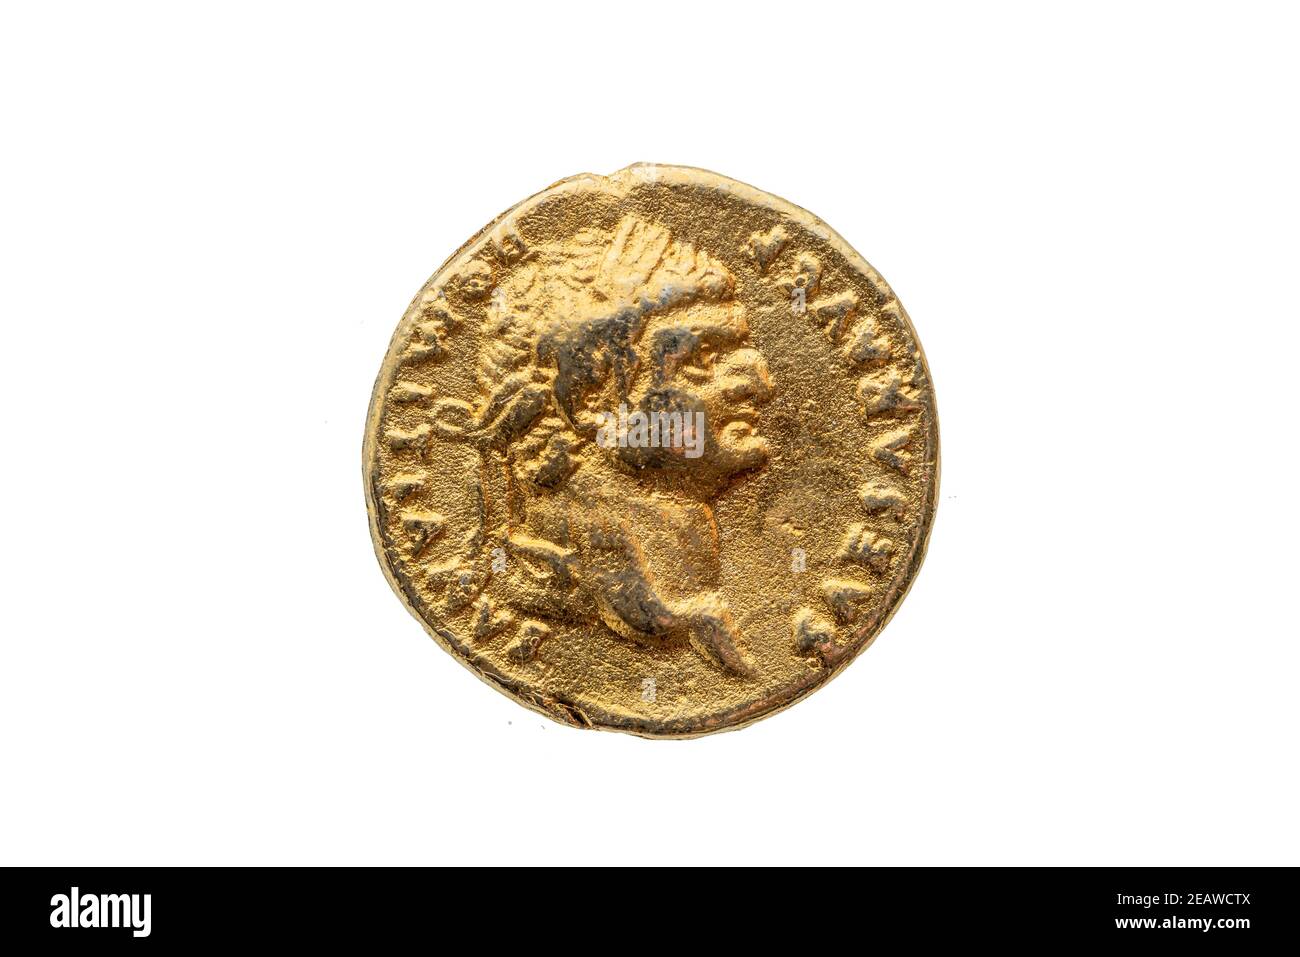 Römische Gold Aureus Münze Vorderseite des römischen Kaisers Domitian  Stockfotografie - Alamy